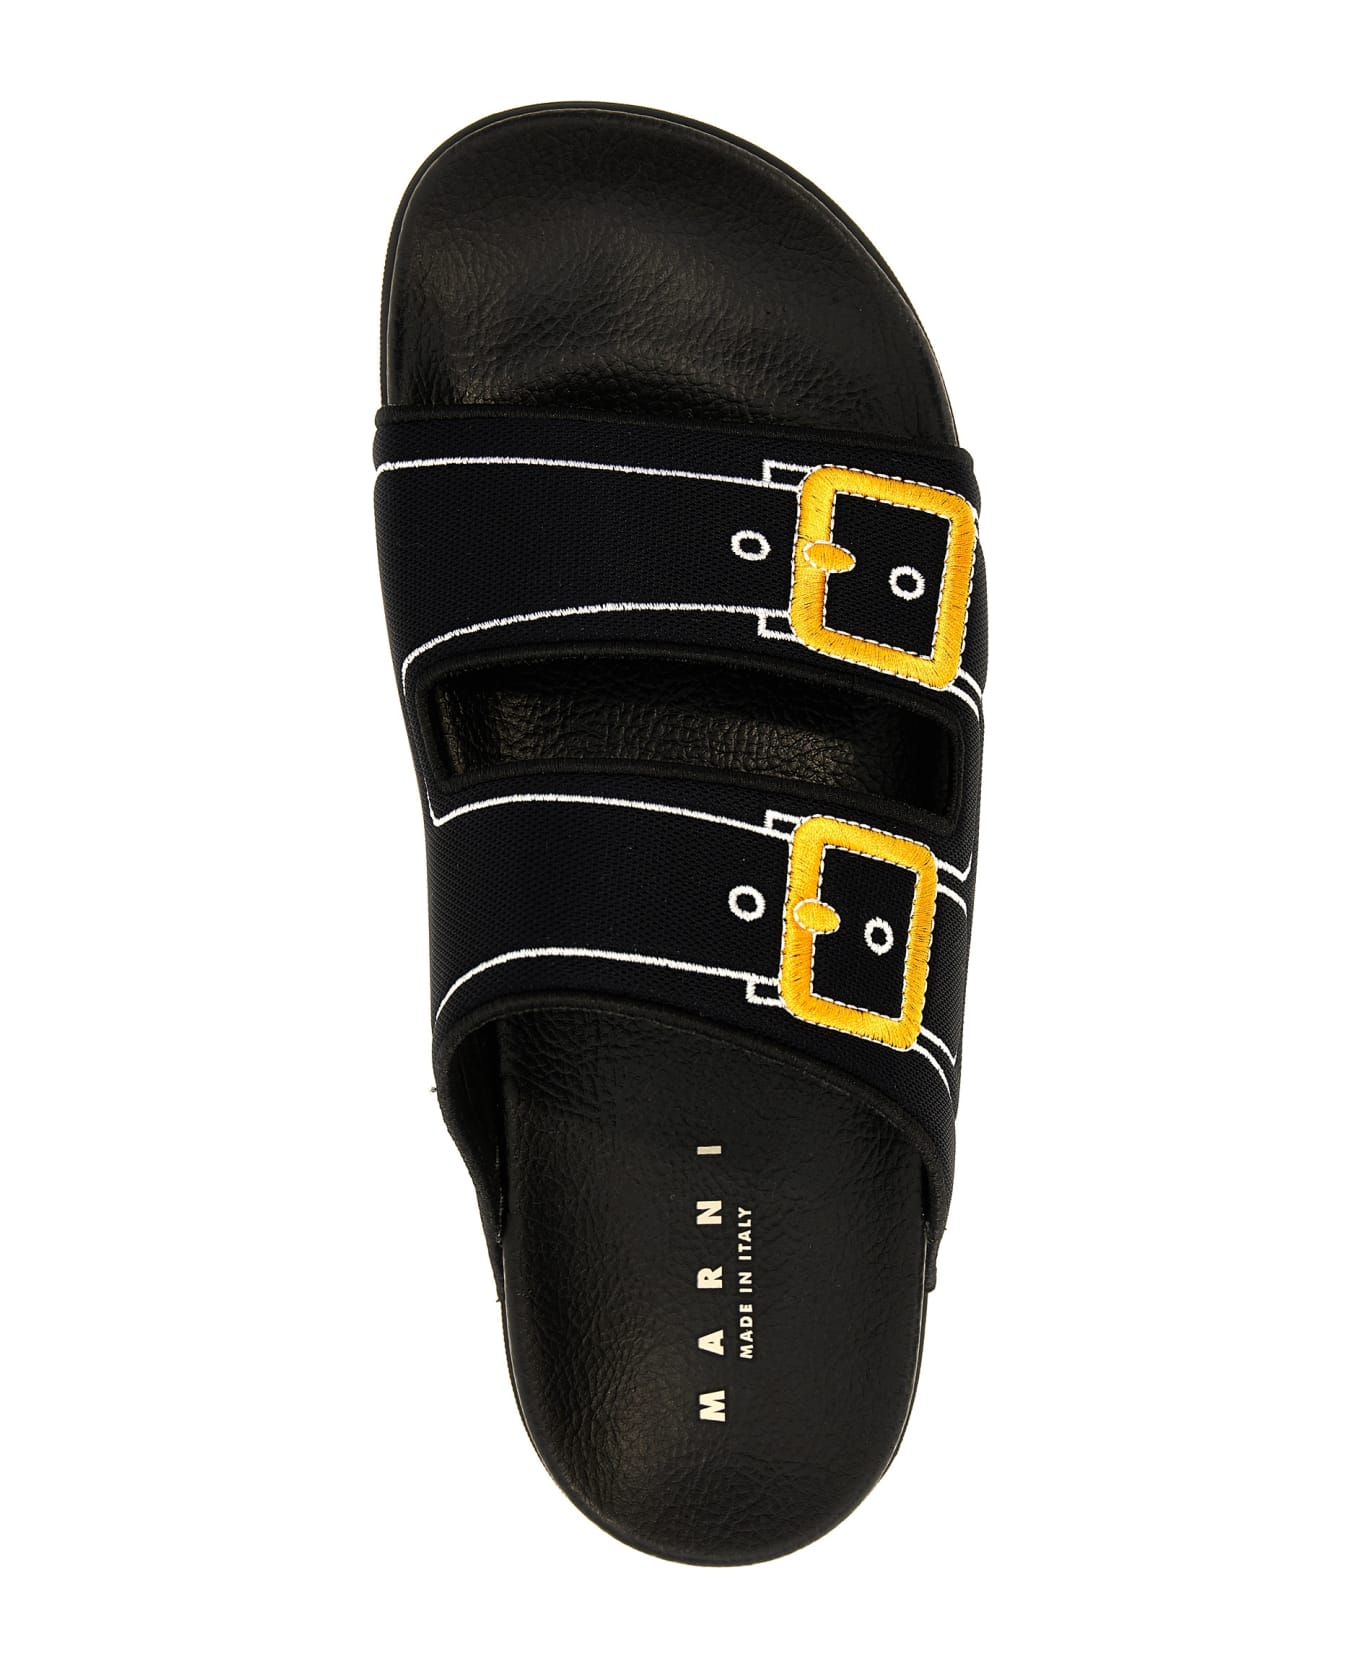 Marni 'trompe L'oeil' Sandals - BLACK シューズ